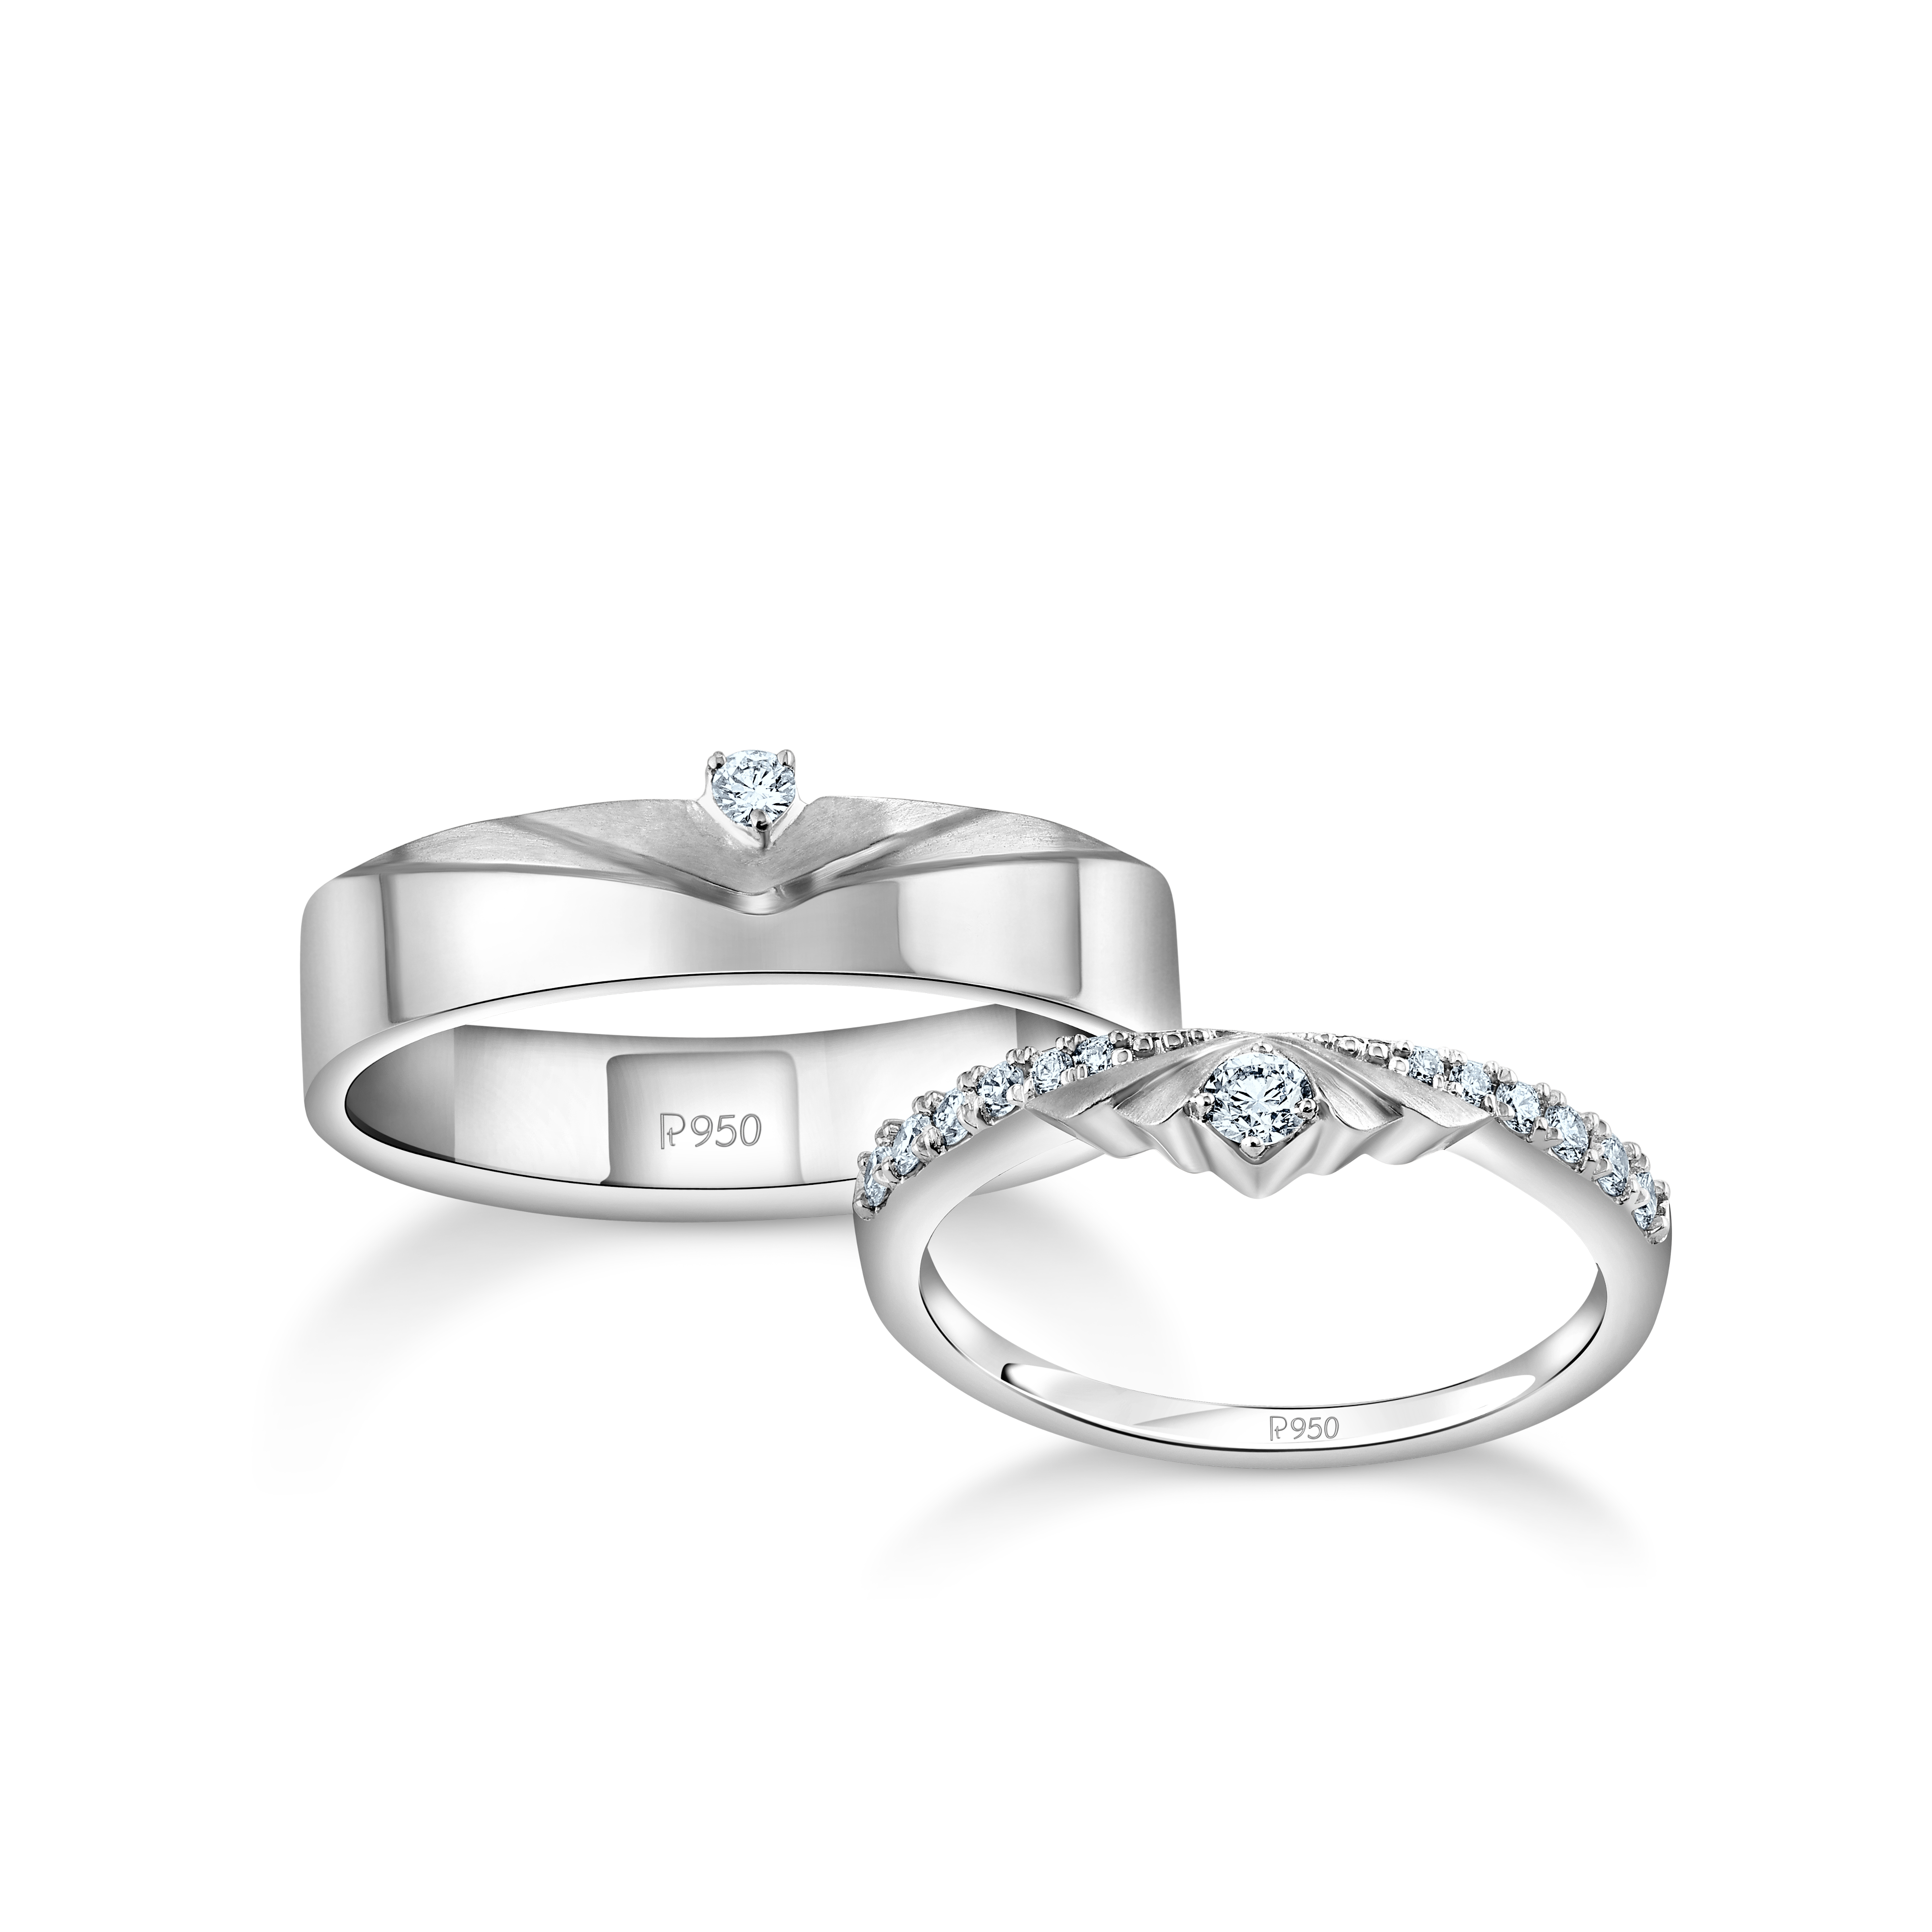 Platinum Love Couple Rings | Original Platinum Ring Price|